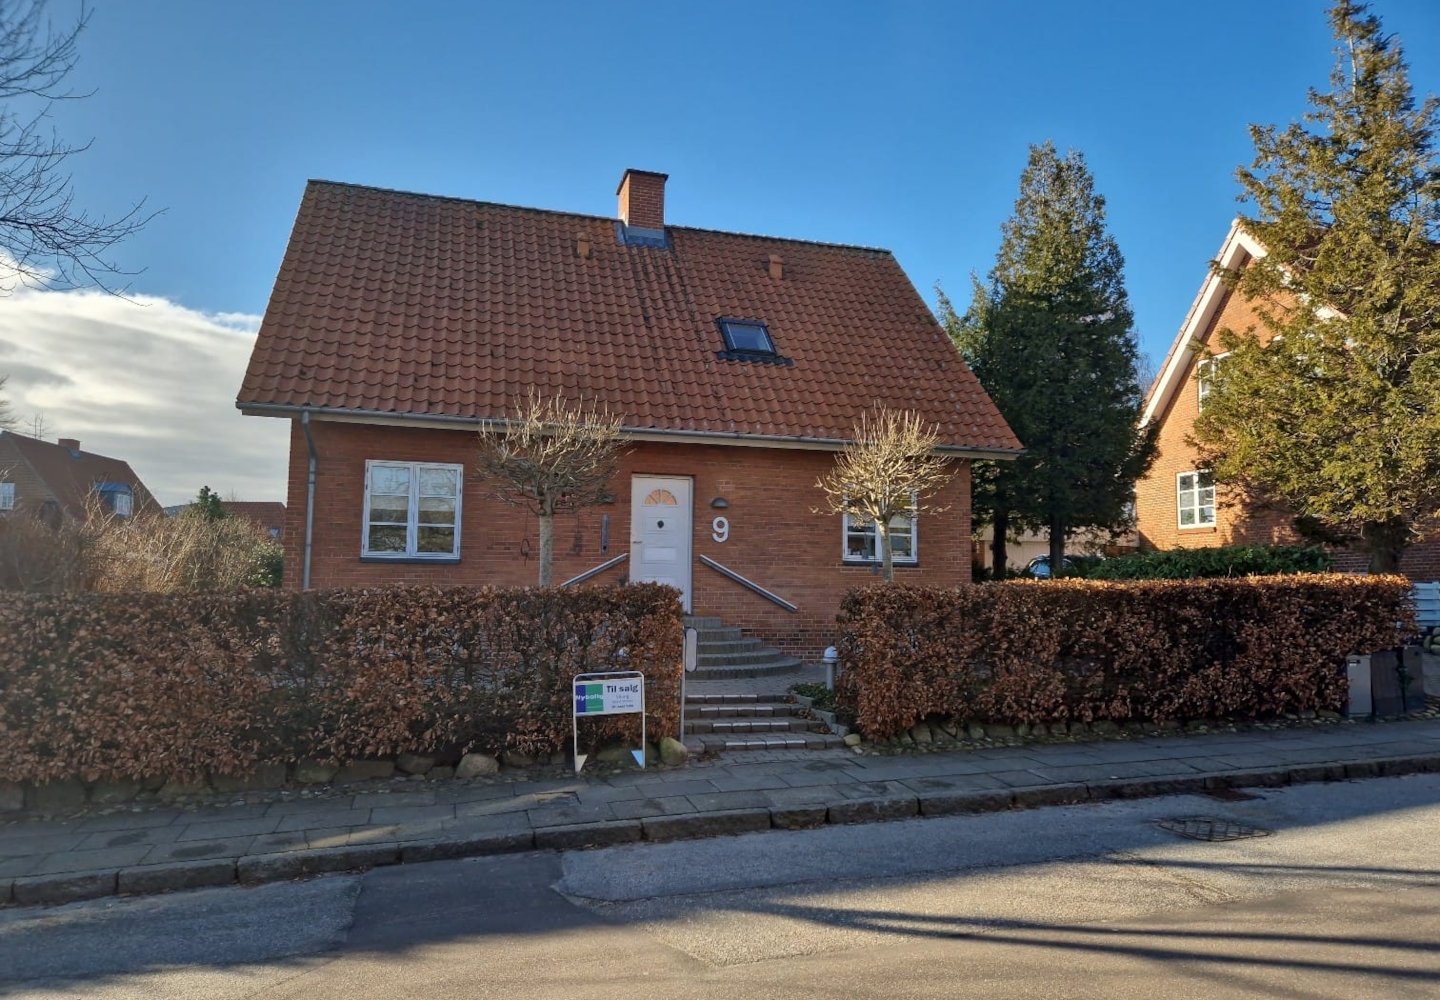 B.S. Ingemanns Vej 9, 8800 Viborg